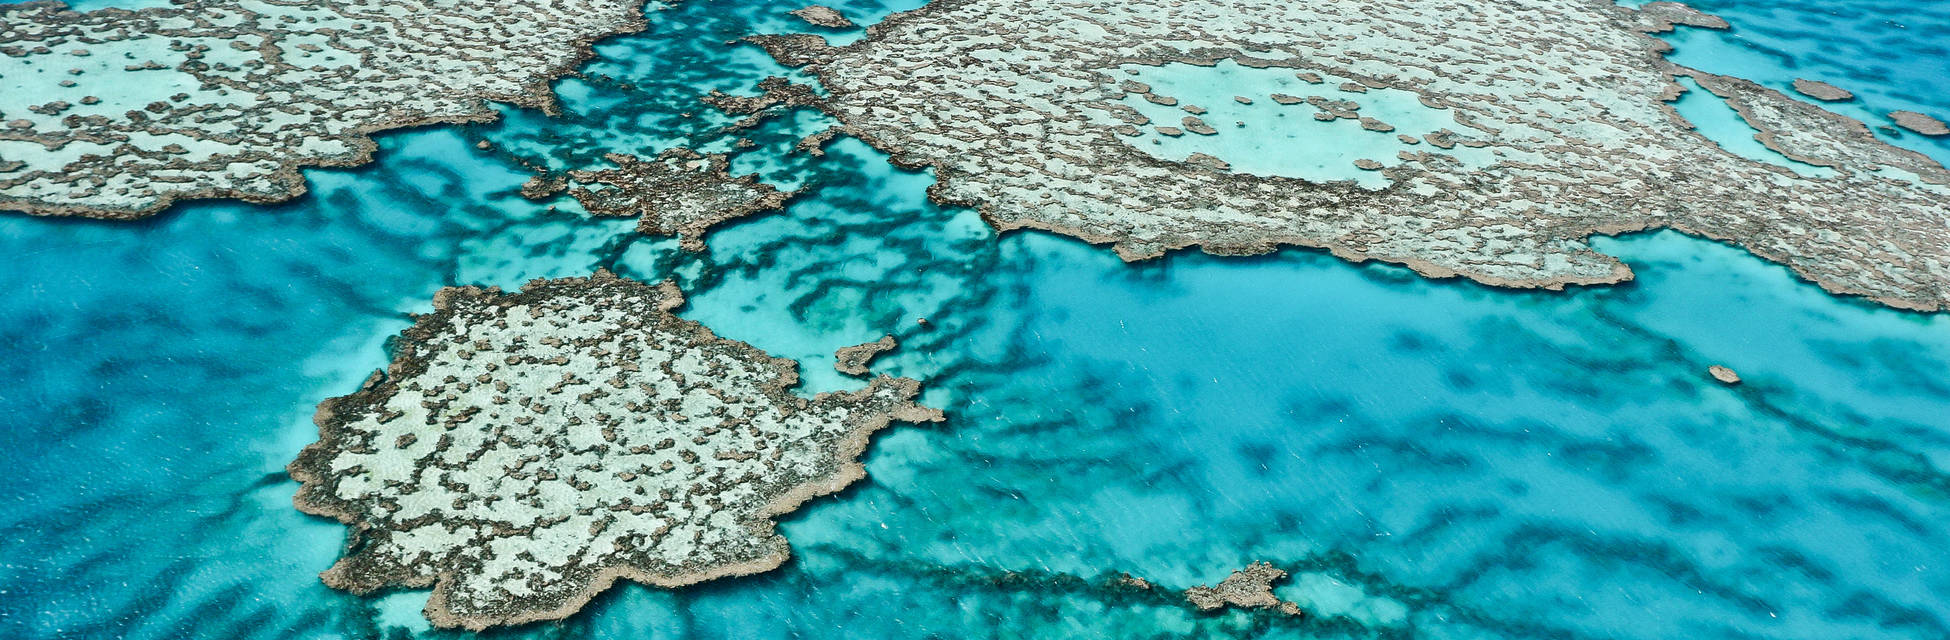 Great-Barrier-Reef-Fotolia_47405243_XL.jpg